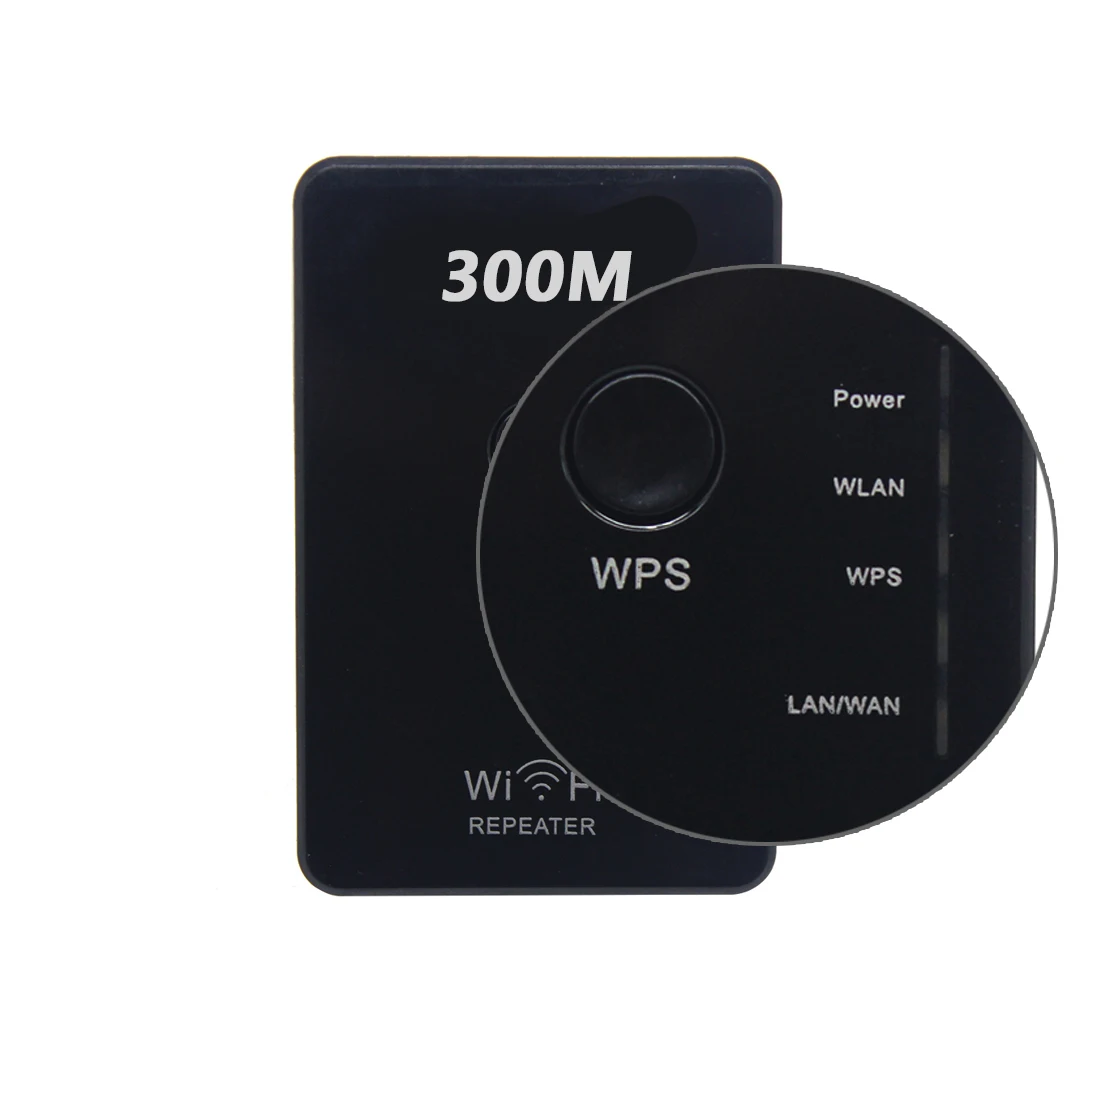 NOYOKERE 802.11N Wifi ретранслятор Беспроводной-N AP расширитель диапазона 300 Мбит/с усилитель сигнала WLAN US